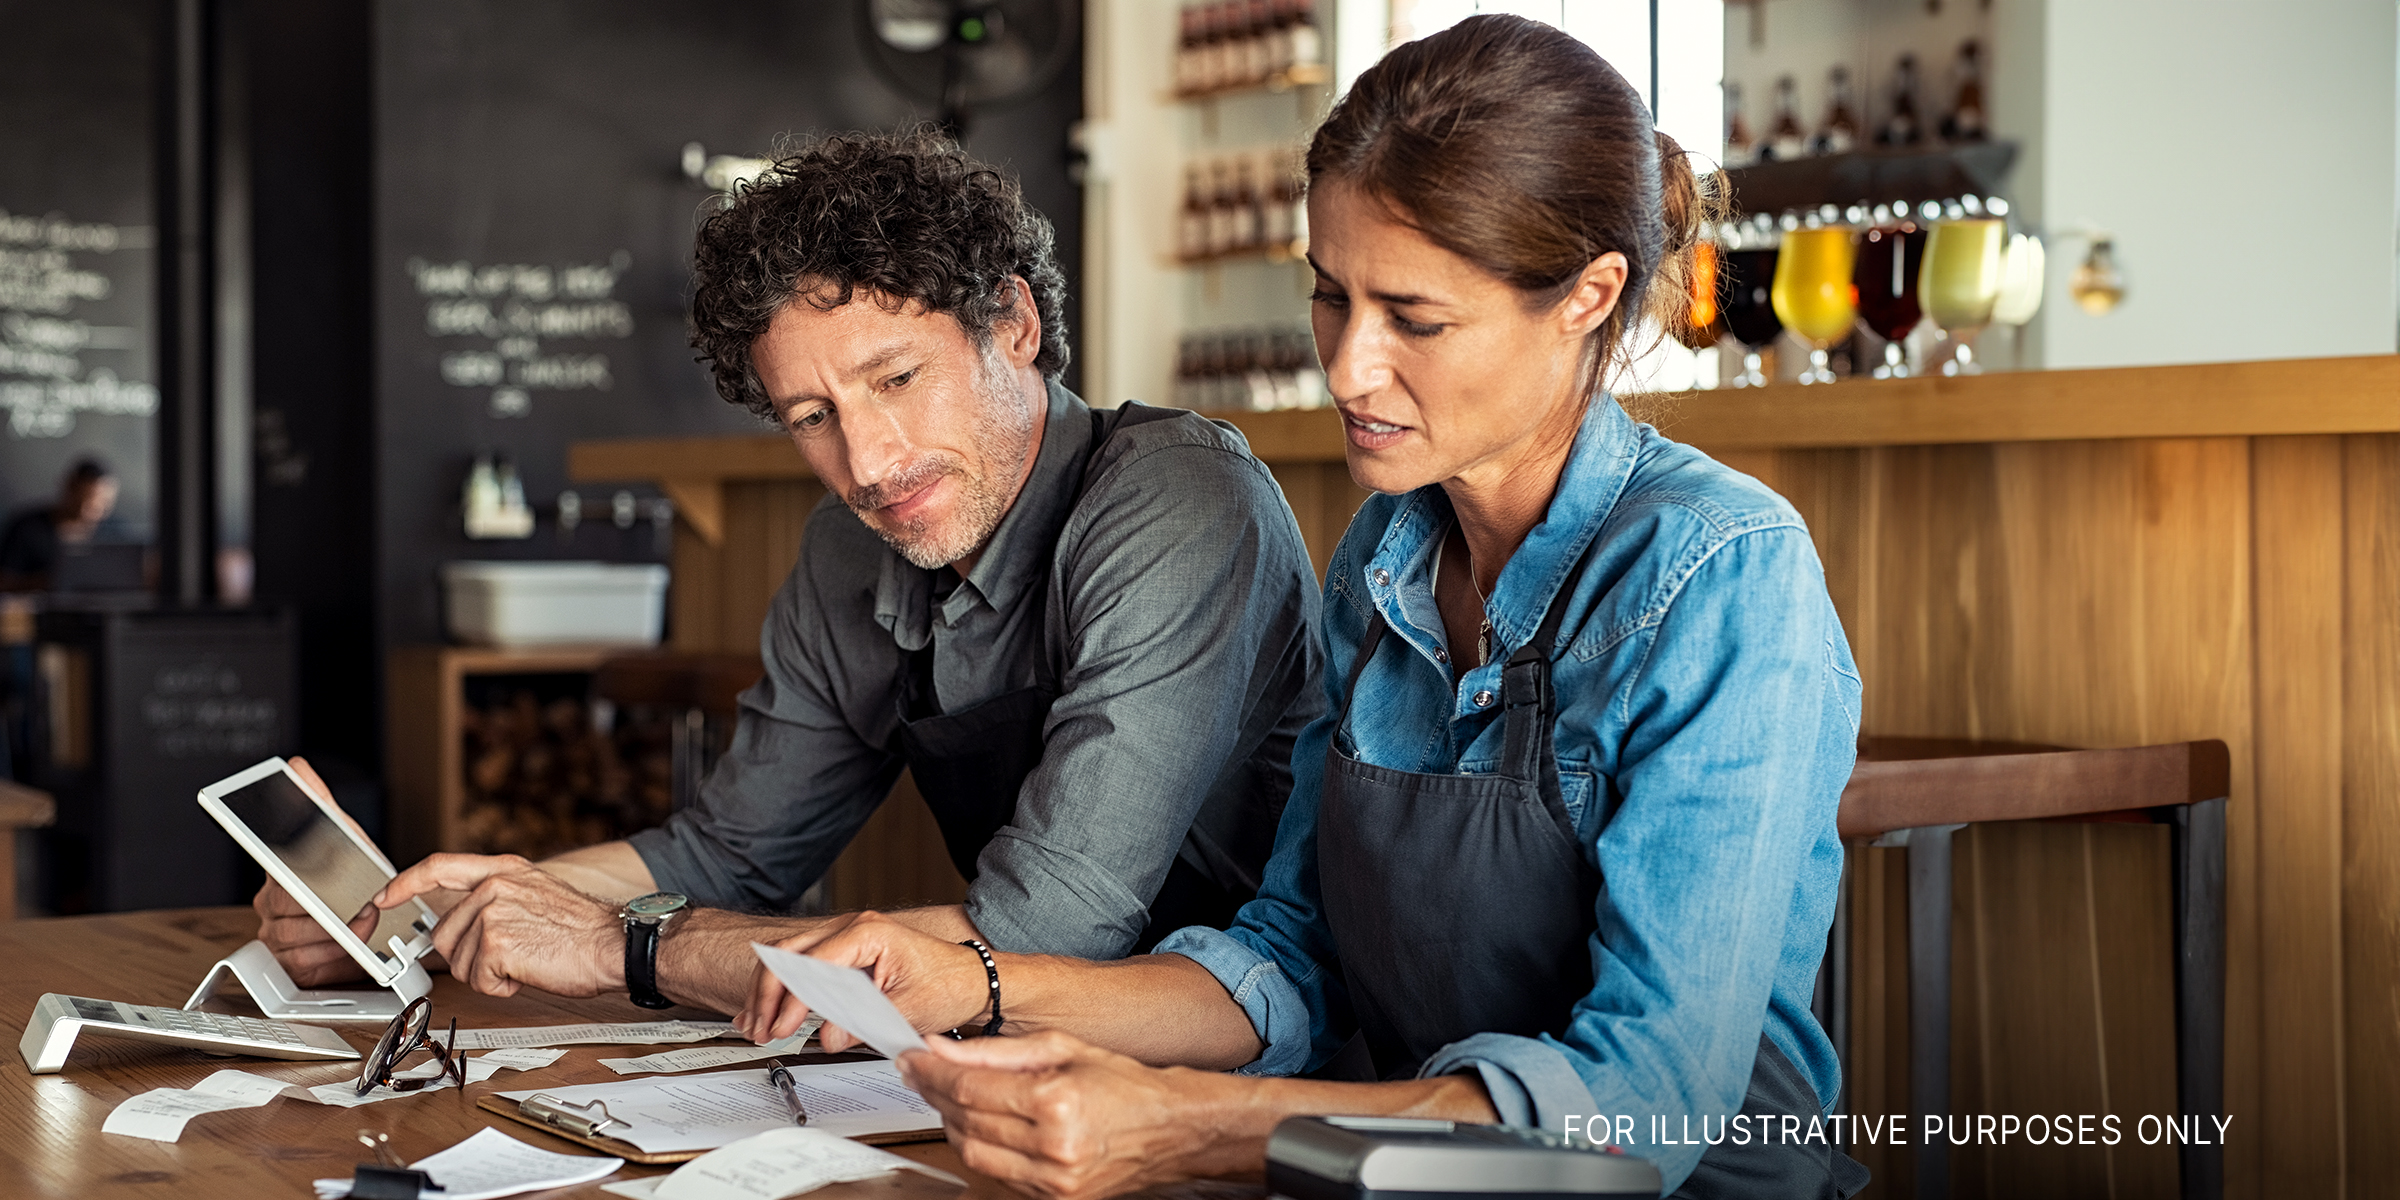 Ein Mann und eine Frau schauen gestresst, während sie Quittungen berechnen | Quelle: Shutterstock